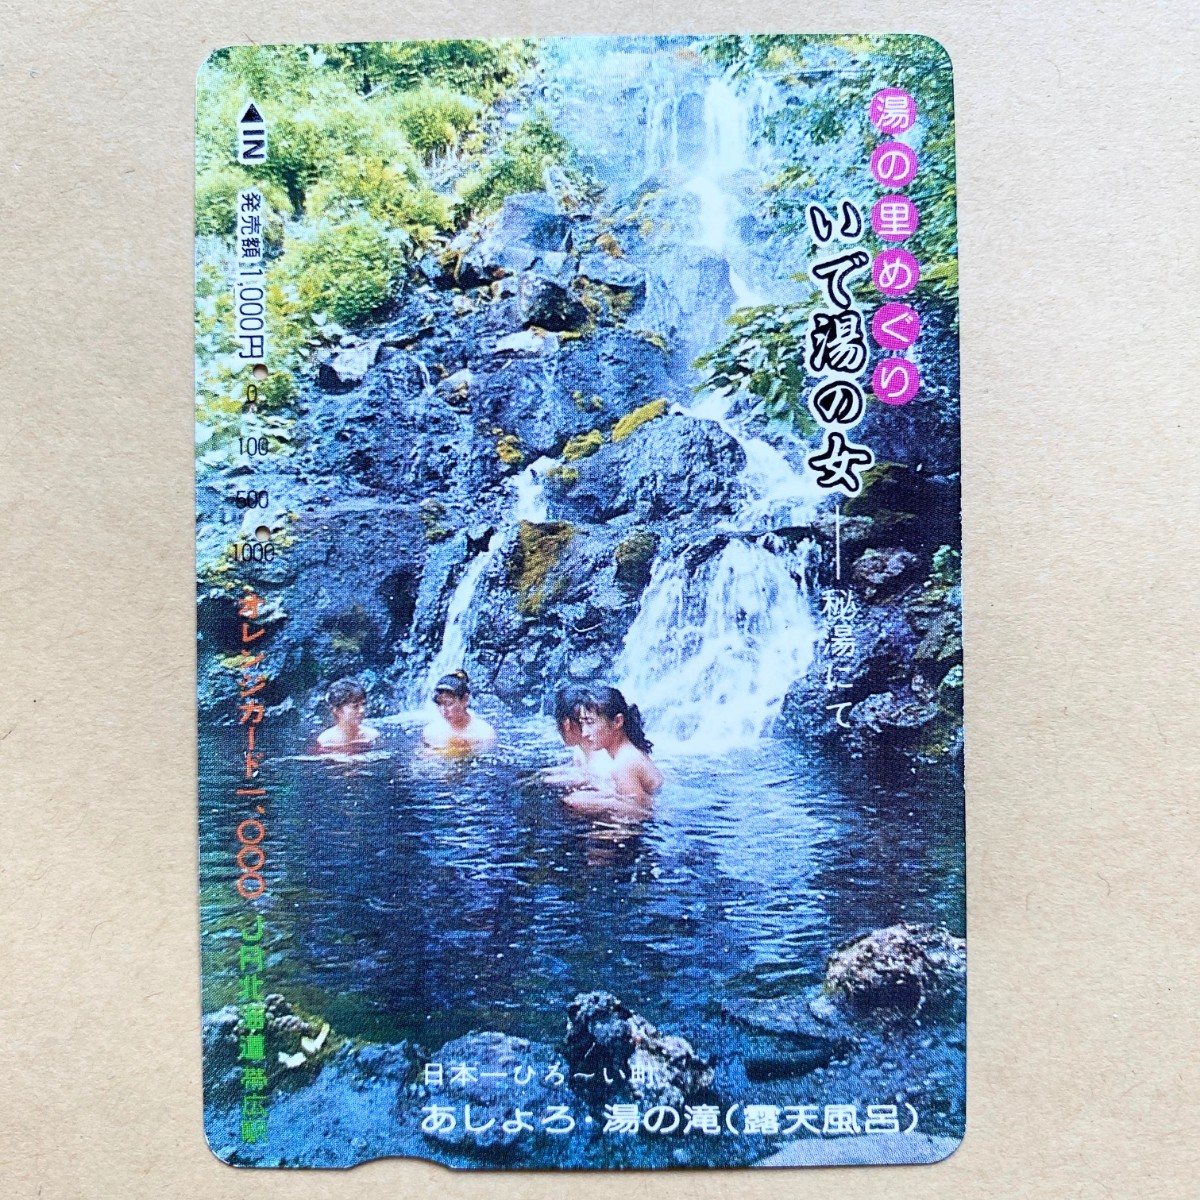 【使用済】 オレンジカード JR北海道 湯の里めぐり いで湯の女 秘湯にてあしょろ・湯の滝_画像1